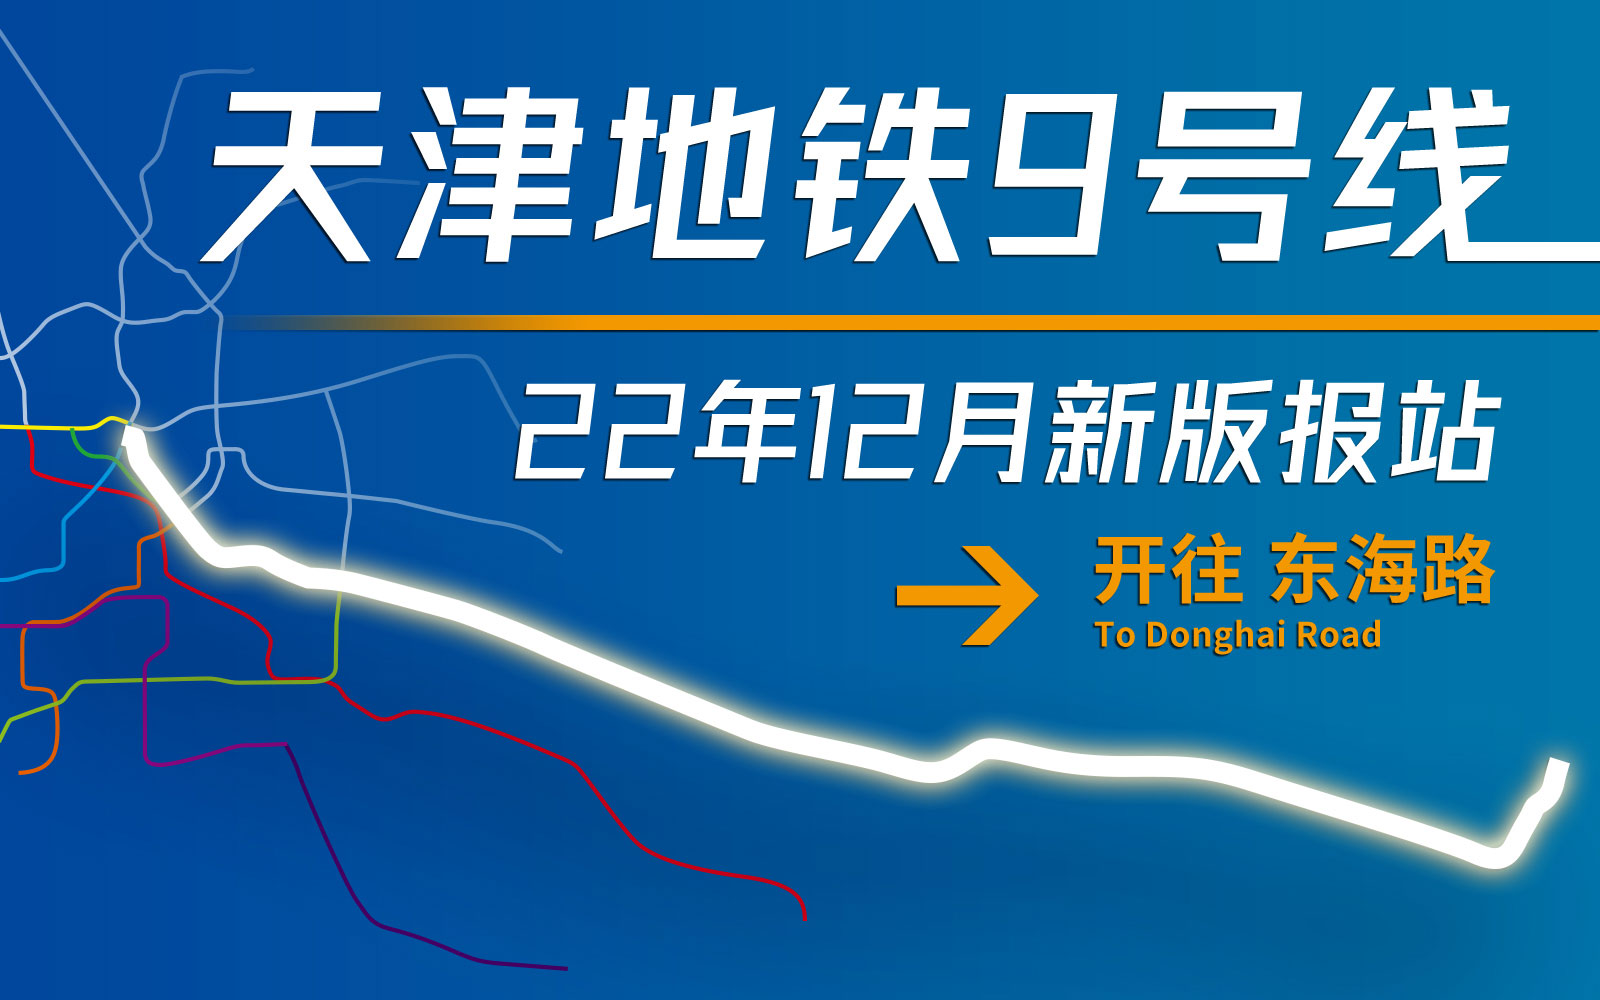 【天津地铁报站】天津地铁9号线东海路方向新版全程报站(2022年12月)